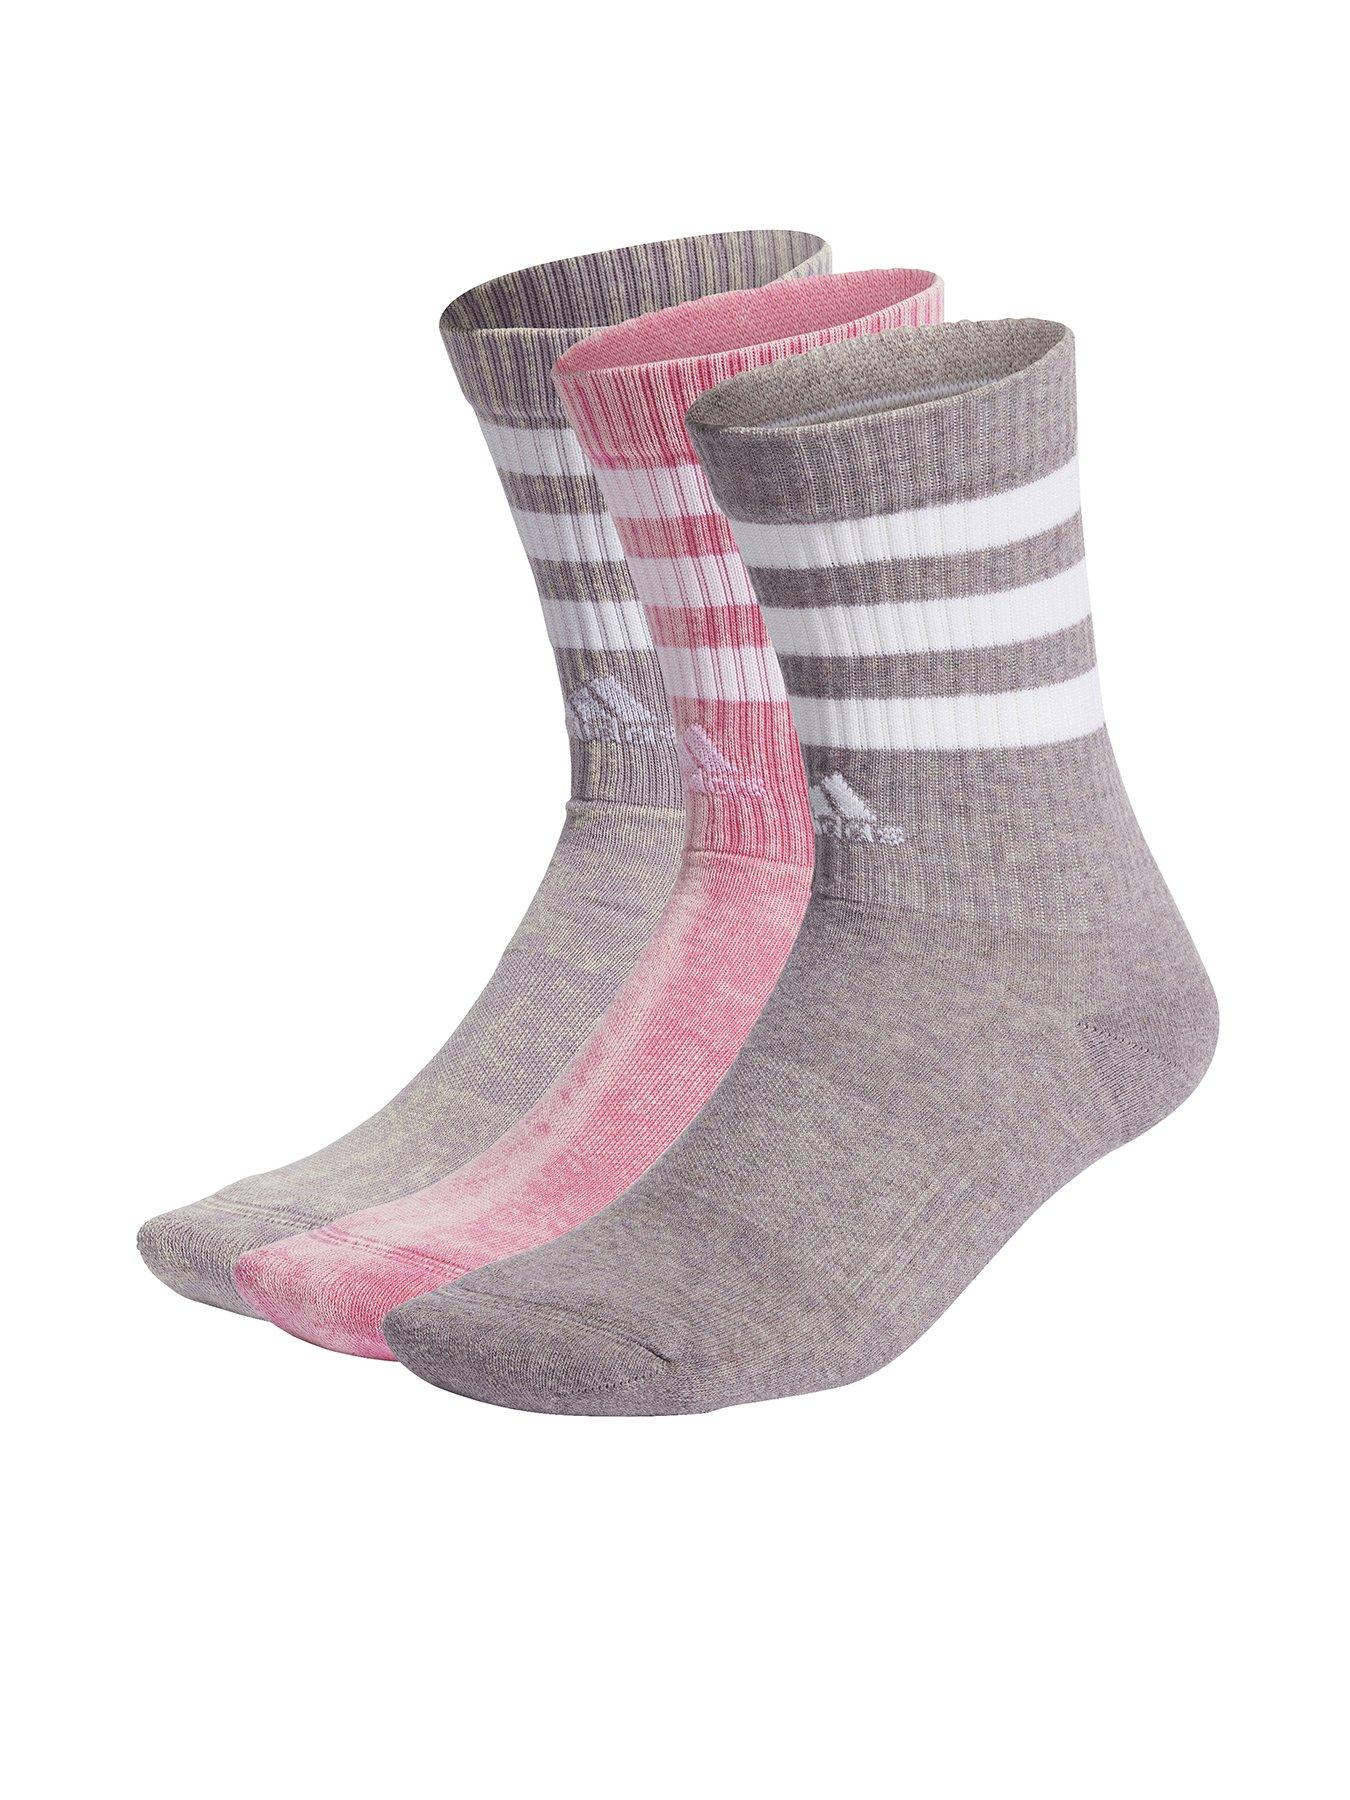 adidas Sportswear Women's 3 Pack 3 Stripe Crew Socks - Pink Multi, Pink, Size S, Women